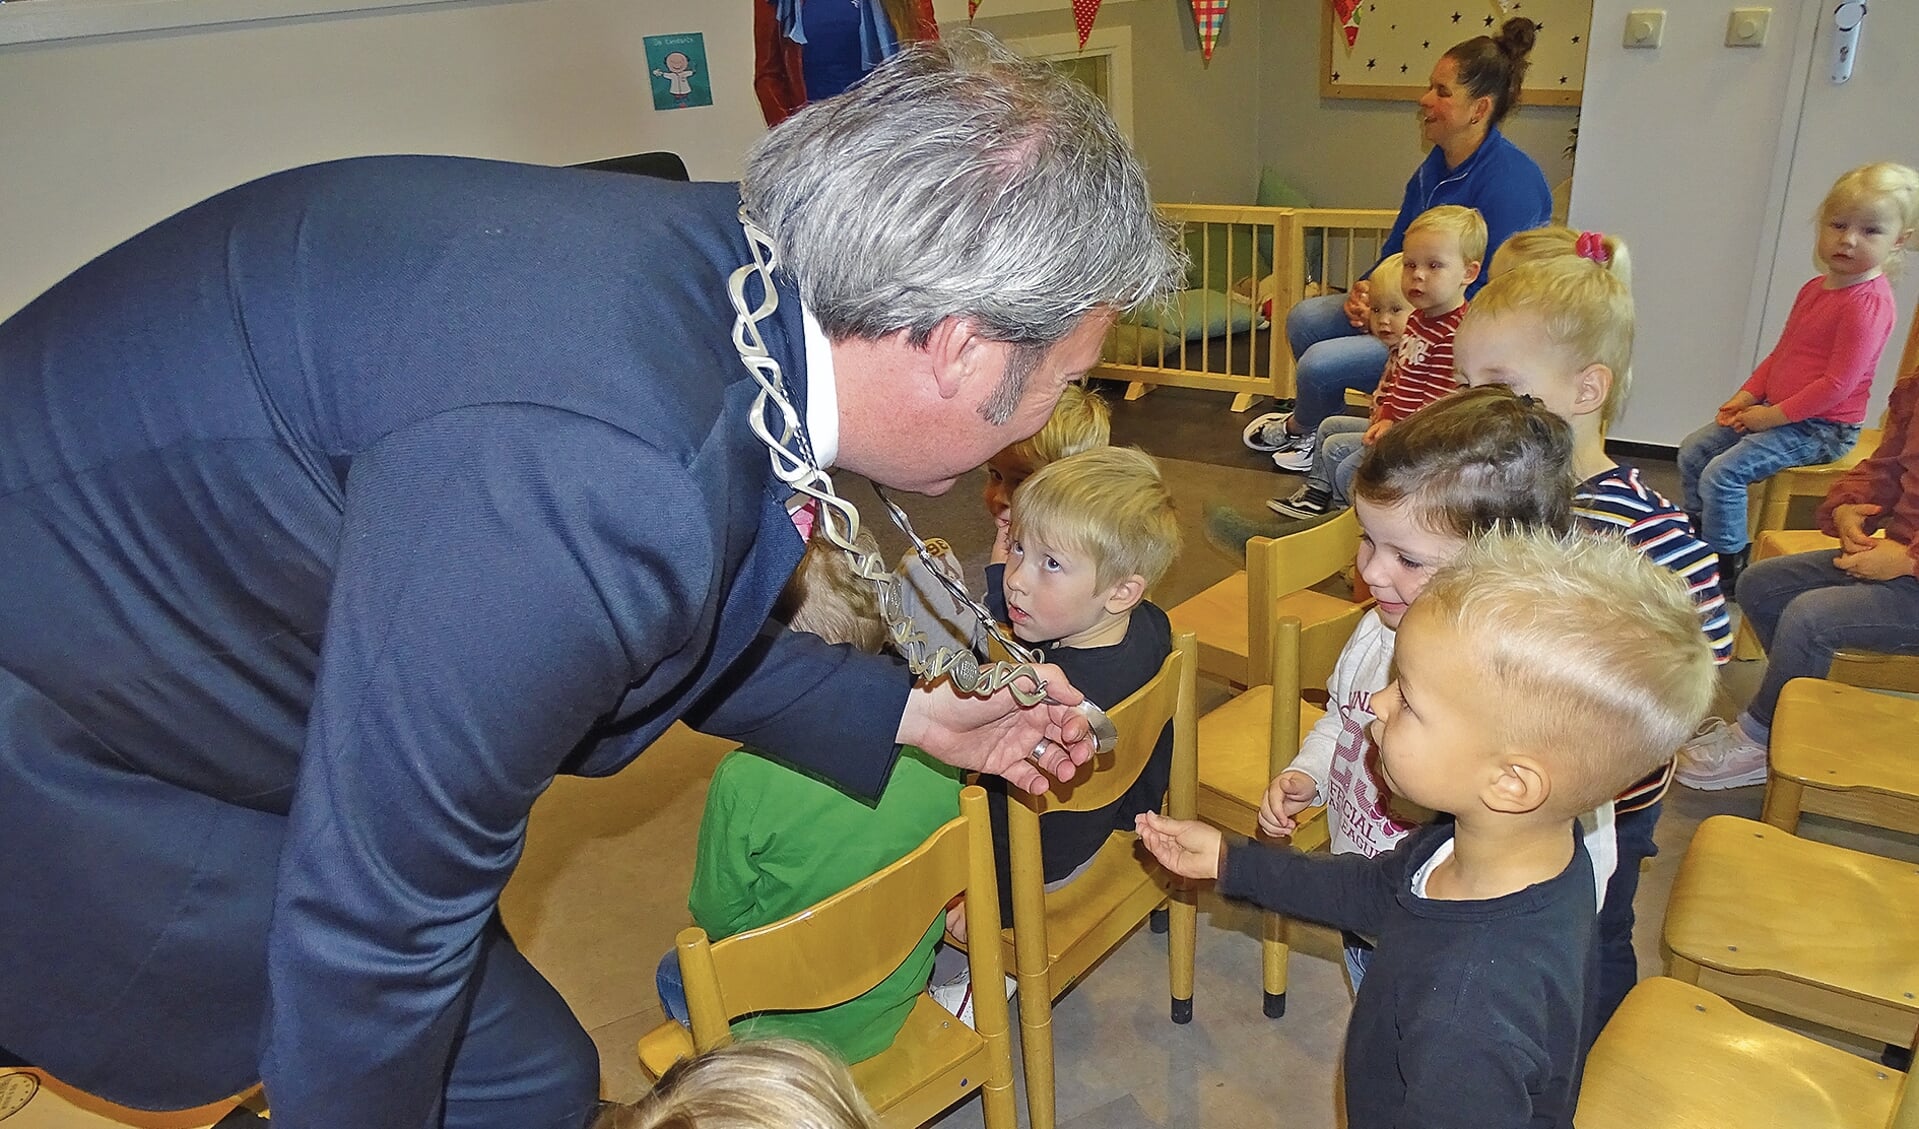 De burgemeester laat eerst zijn ambtsketting voelen aan de kinderen voordat hij voor gaat lezen.